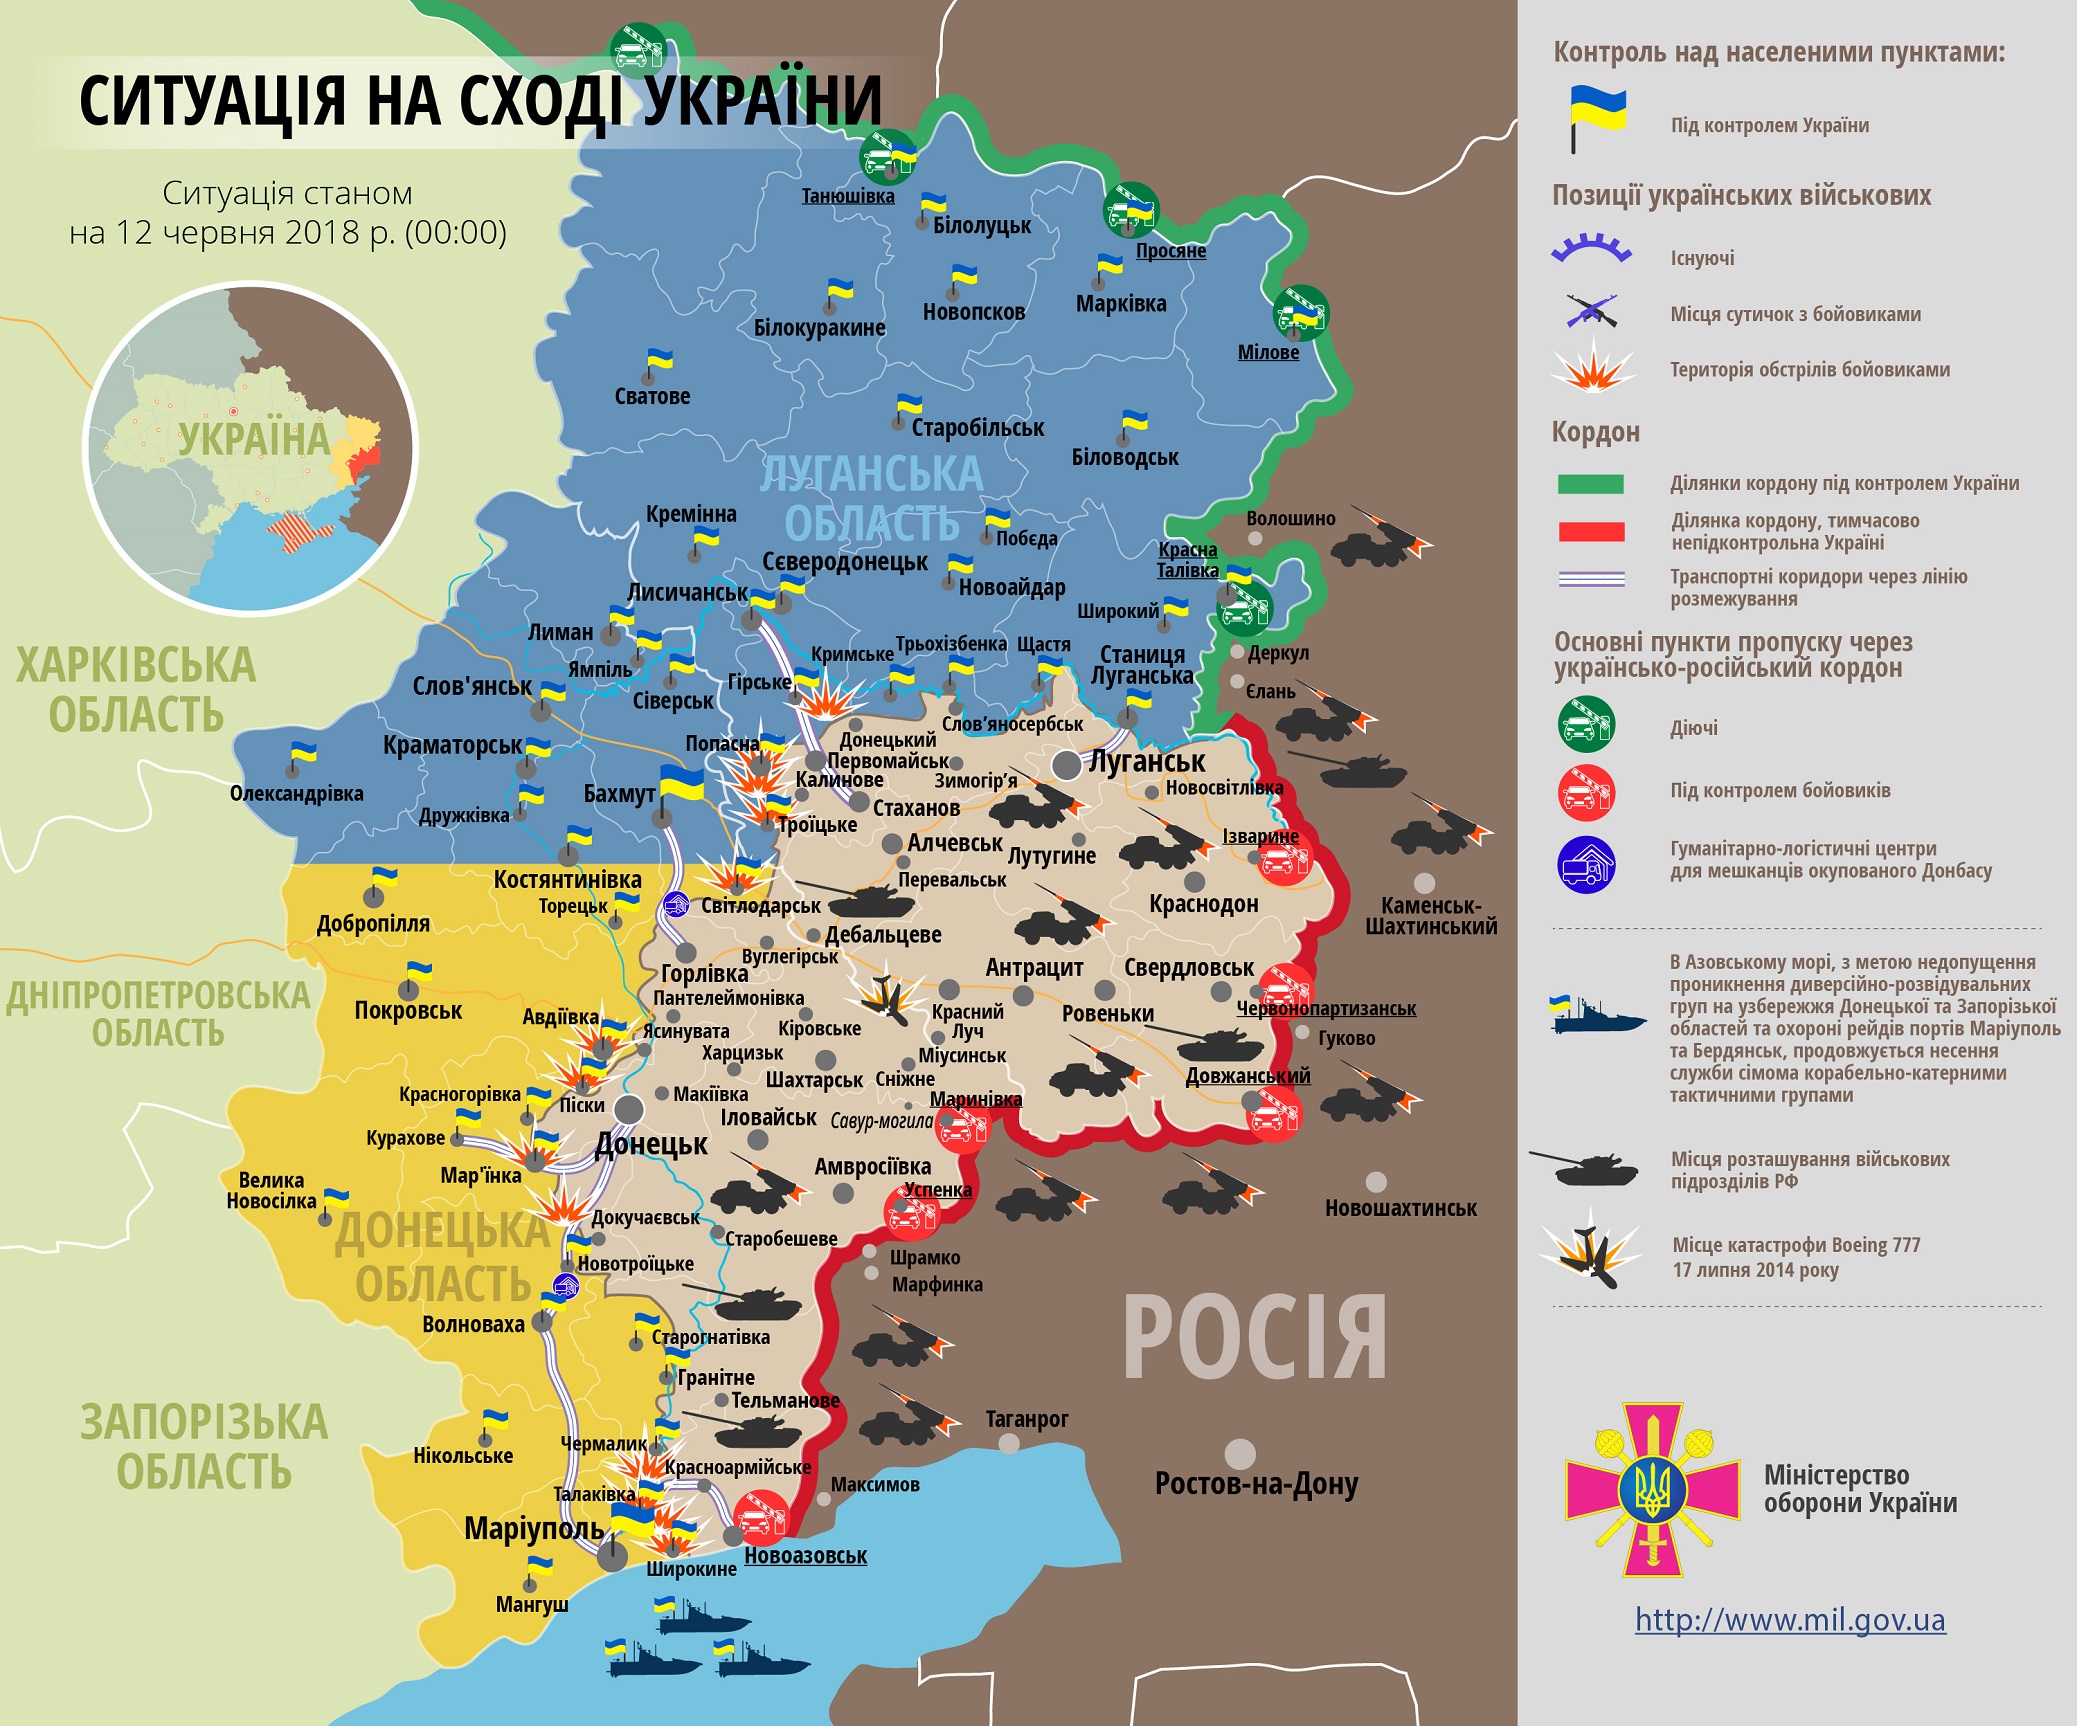 ВСУ попали под минометный обстрел боевиков РФ на Донбассе: опубликована новая карта ООС от 12.06.2018